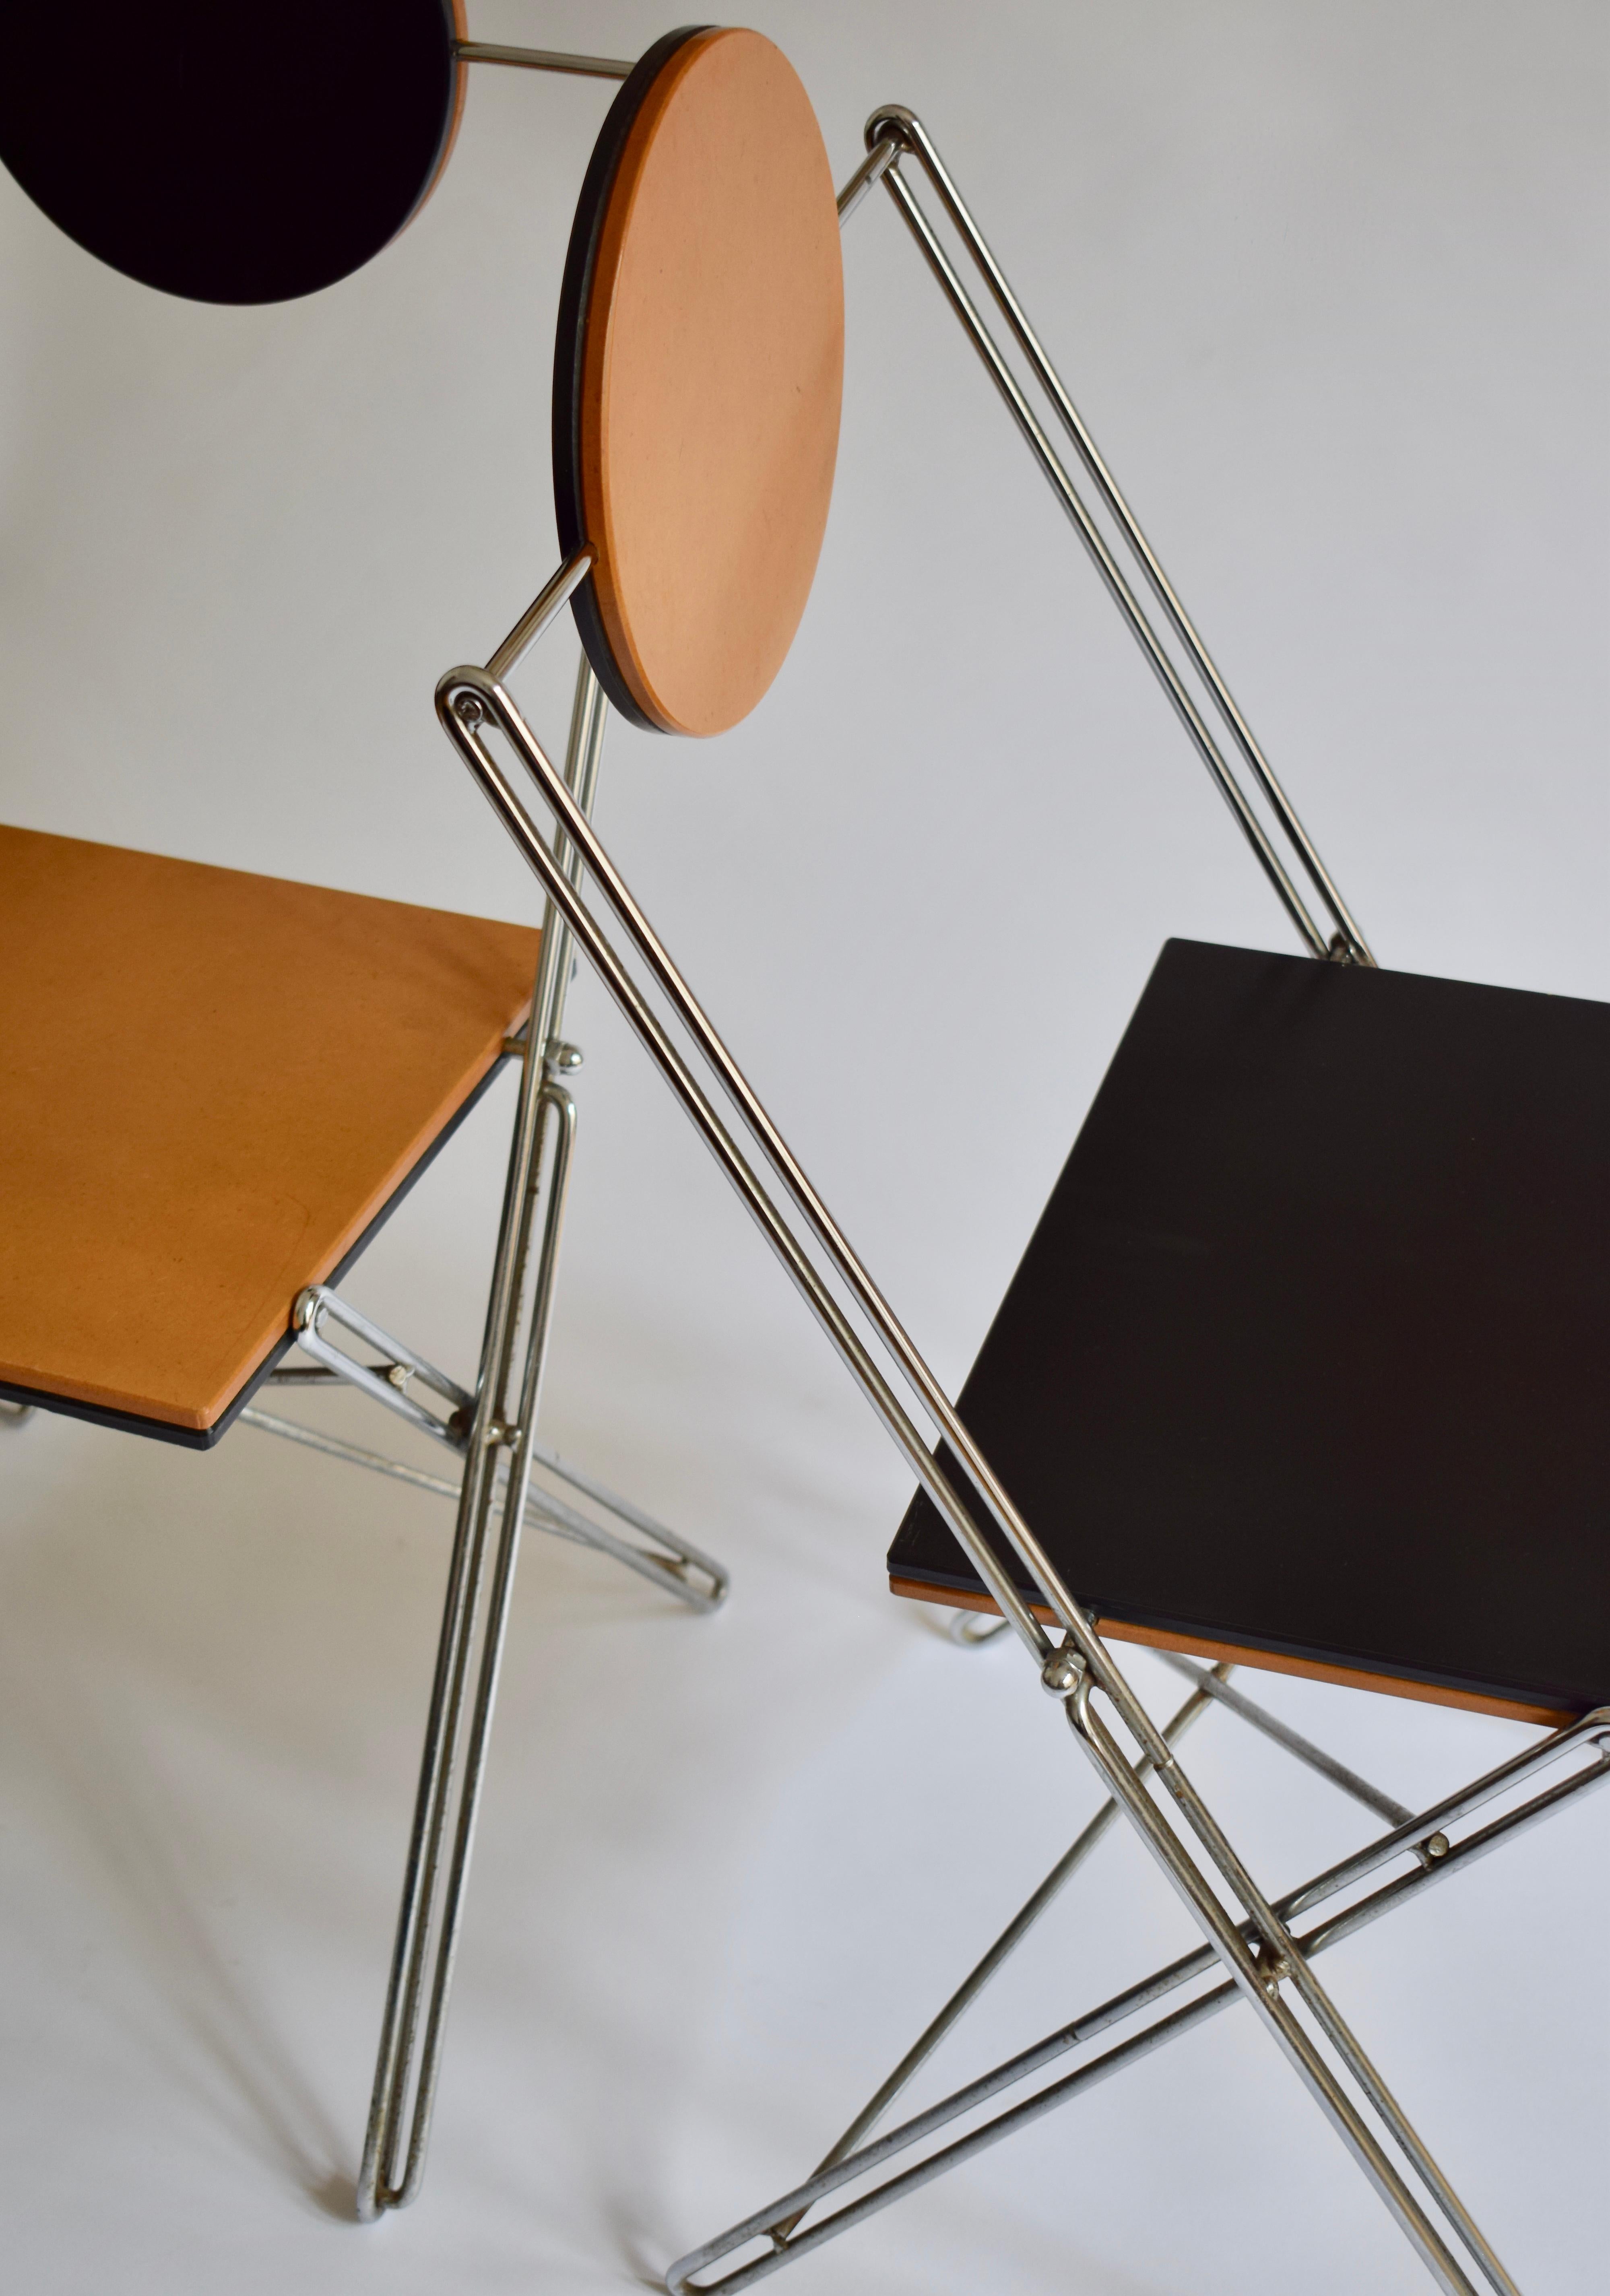 Rare paire de chaises pliable R.J.C. de René-Jean caillette pour VIA Diffusion. 
France - circa 1986
Assise et dossier en médium verni, structure en fil d'acier. Ces chaises sont pliantes et réversibles.
Bel état général.